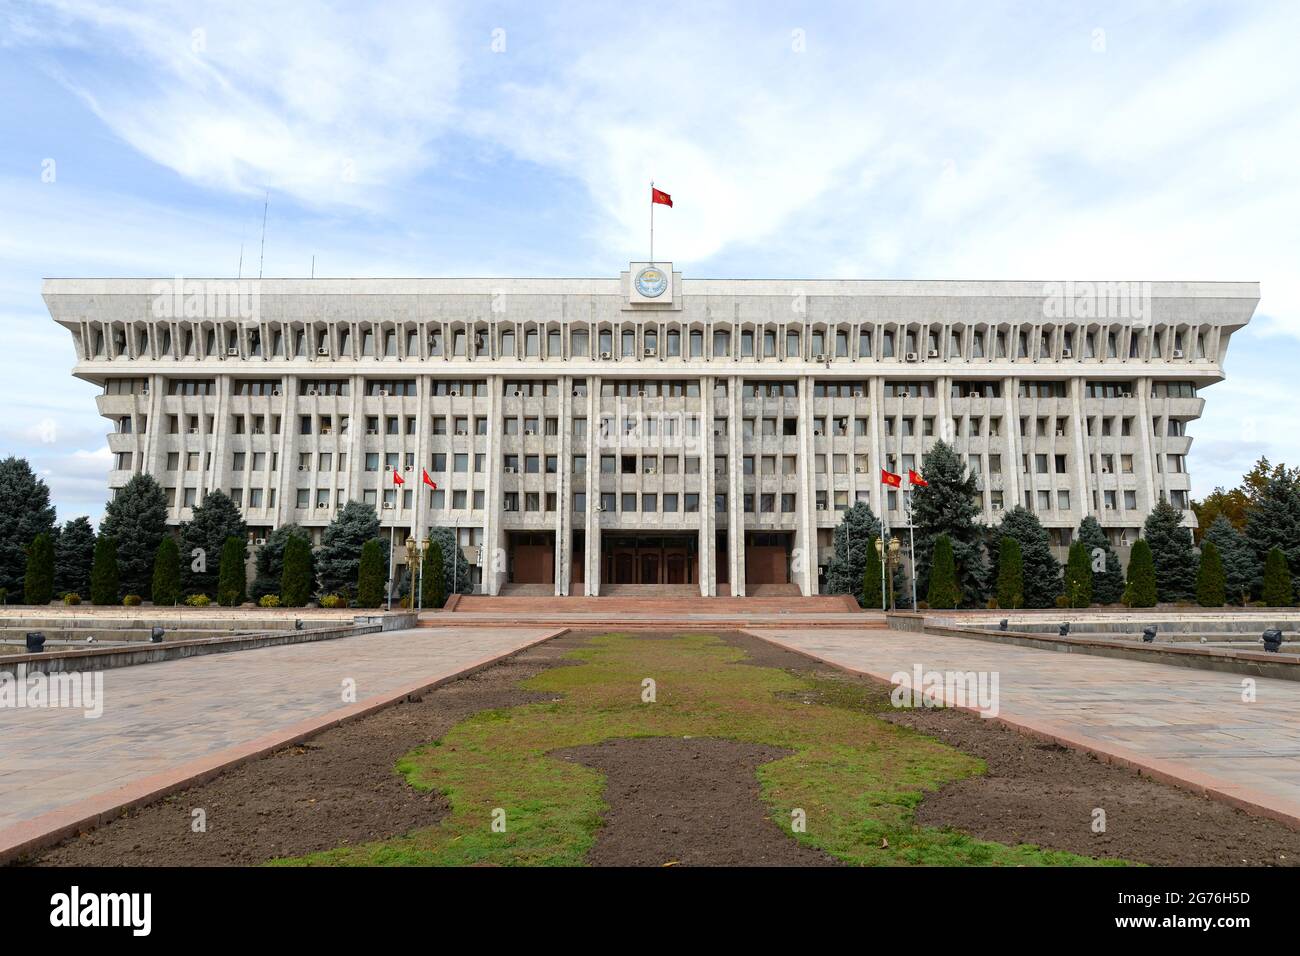 Kirguistán Casa Blanca, situada en Bishkek, Kirguistán. Edificio de oficinas presidenciales kirguís de estilo moderno estalinista / brutalismo. Casa Blanca de Bishkek. Foto de stock